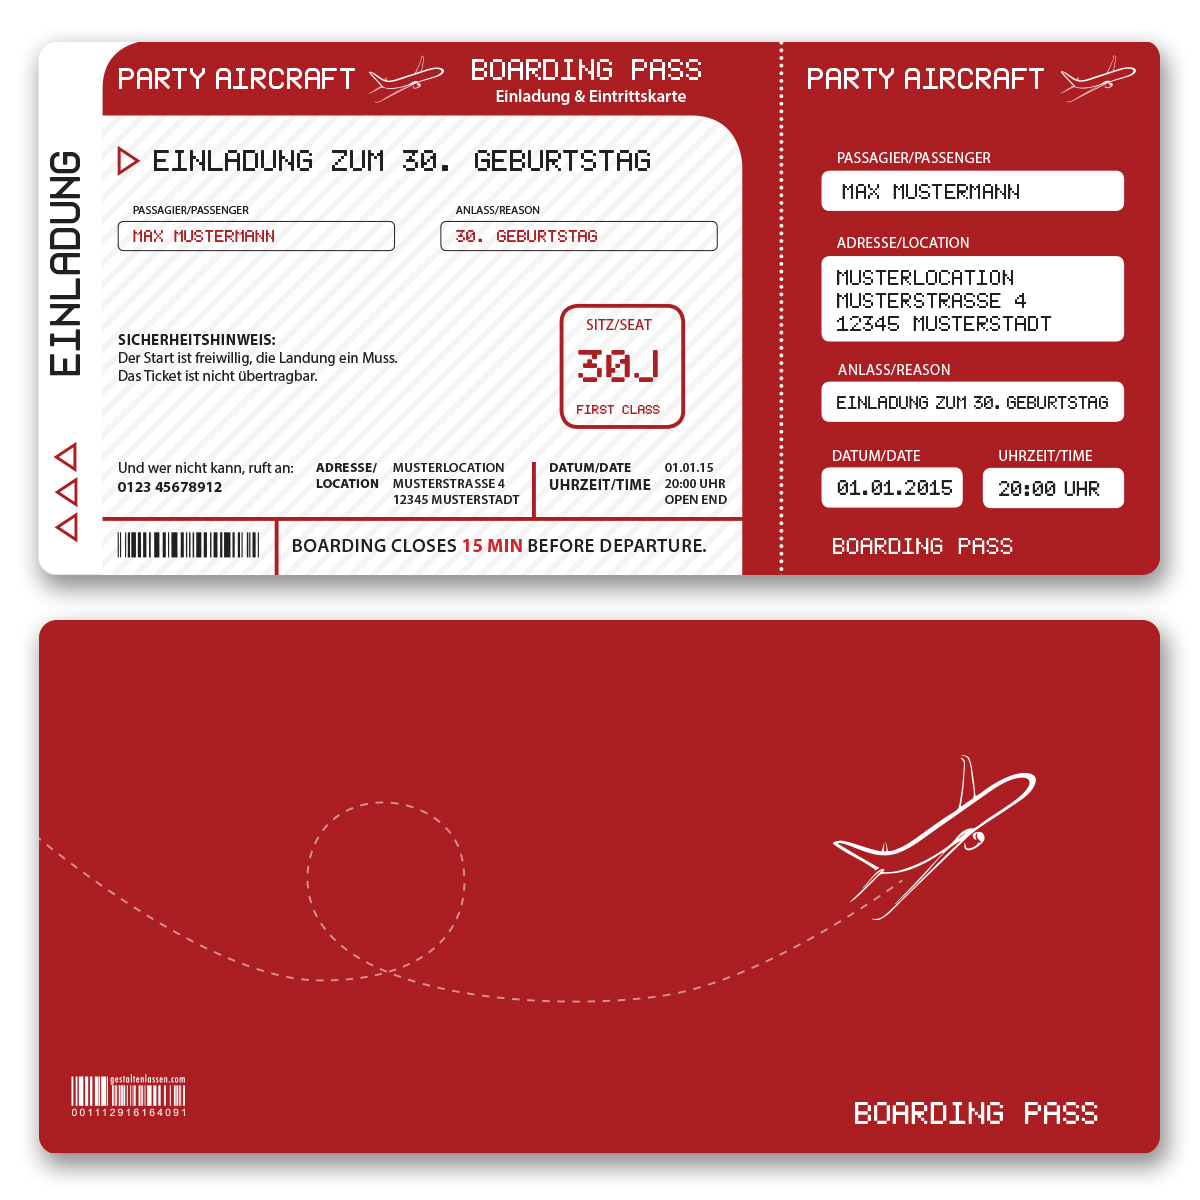 Einladungskarten als Flugticket Rot ab 55 Cent / Einladung